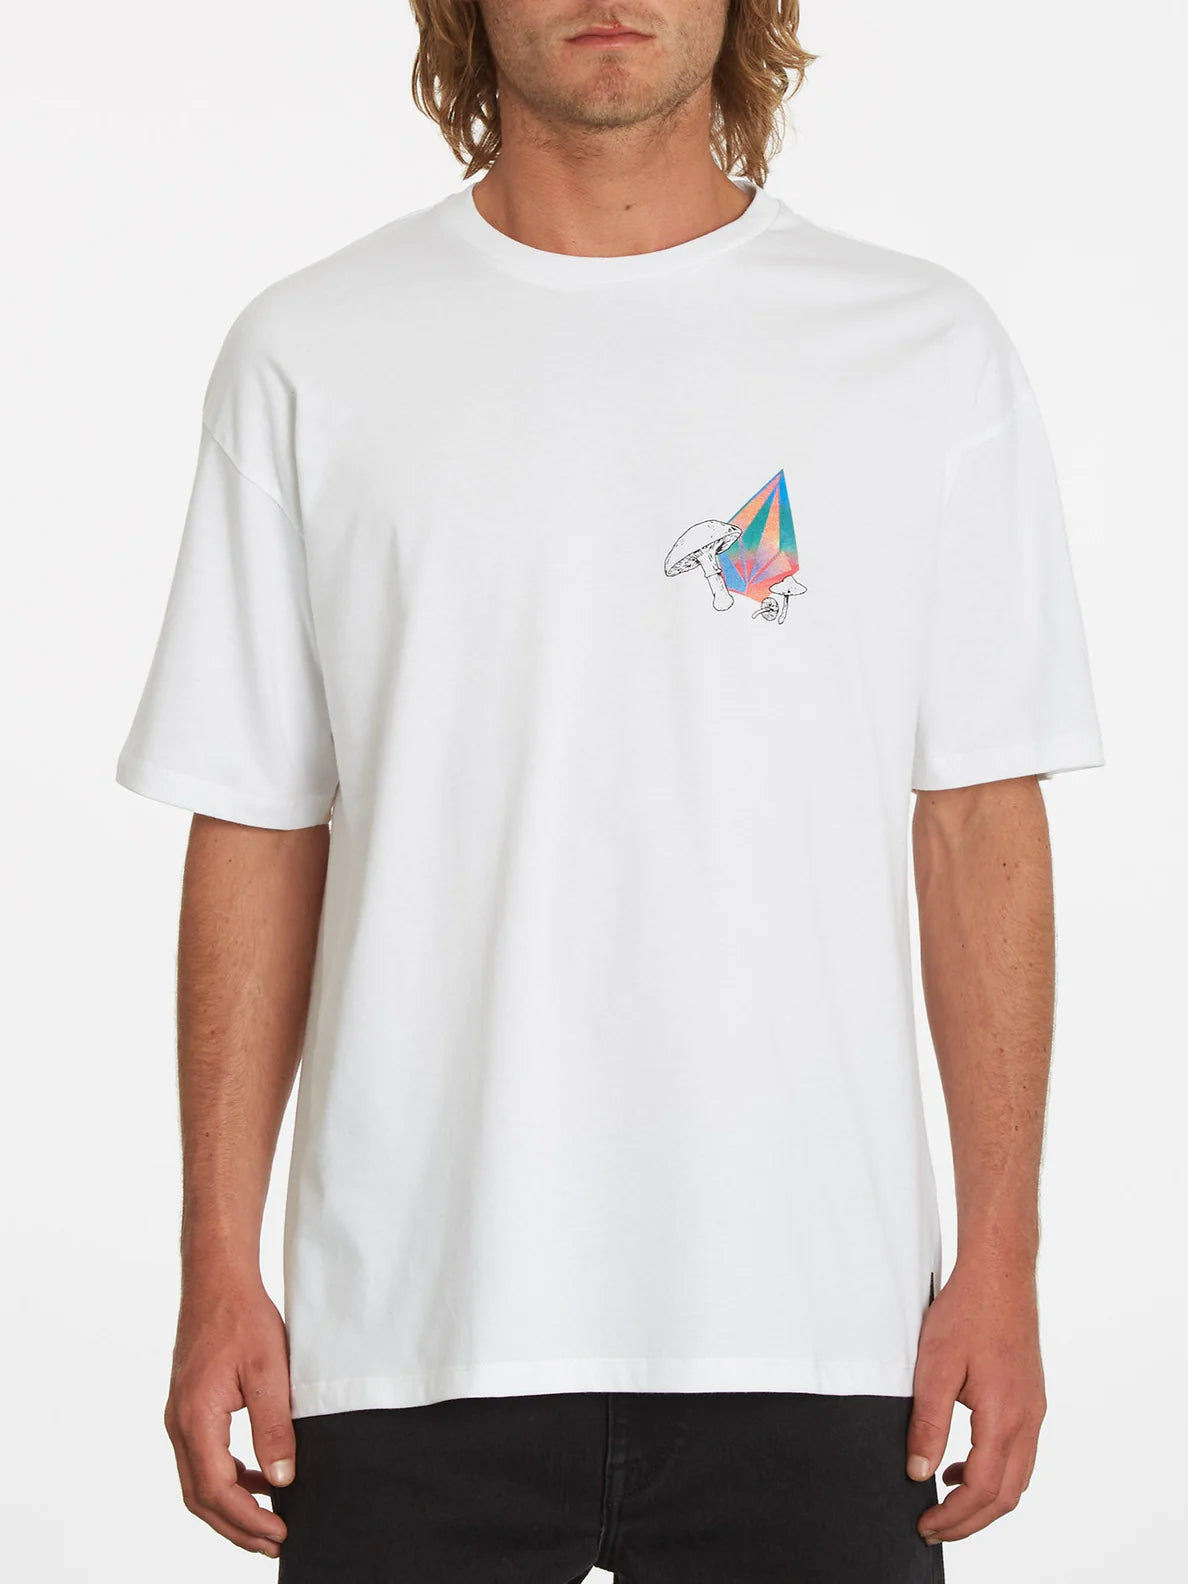 Camiseta Volcom Chrissie Abbott x French 2 White